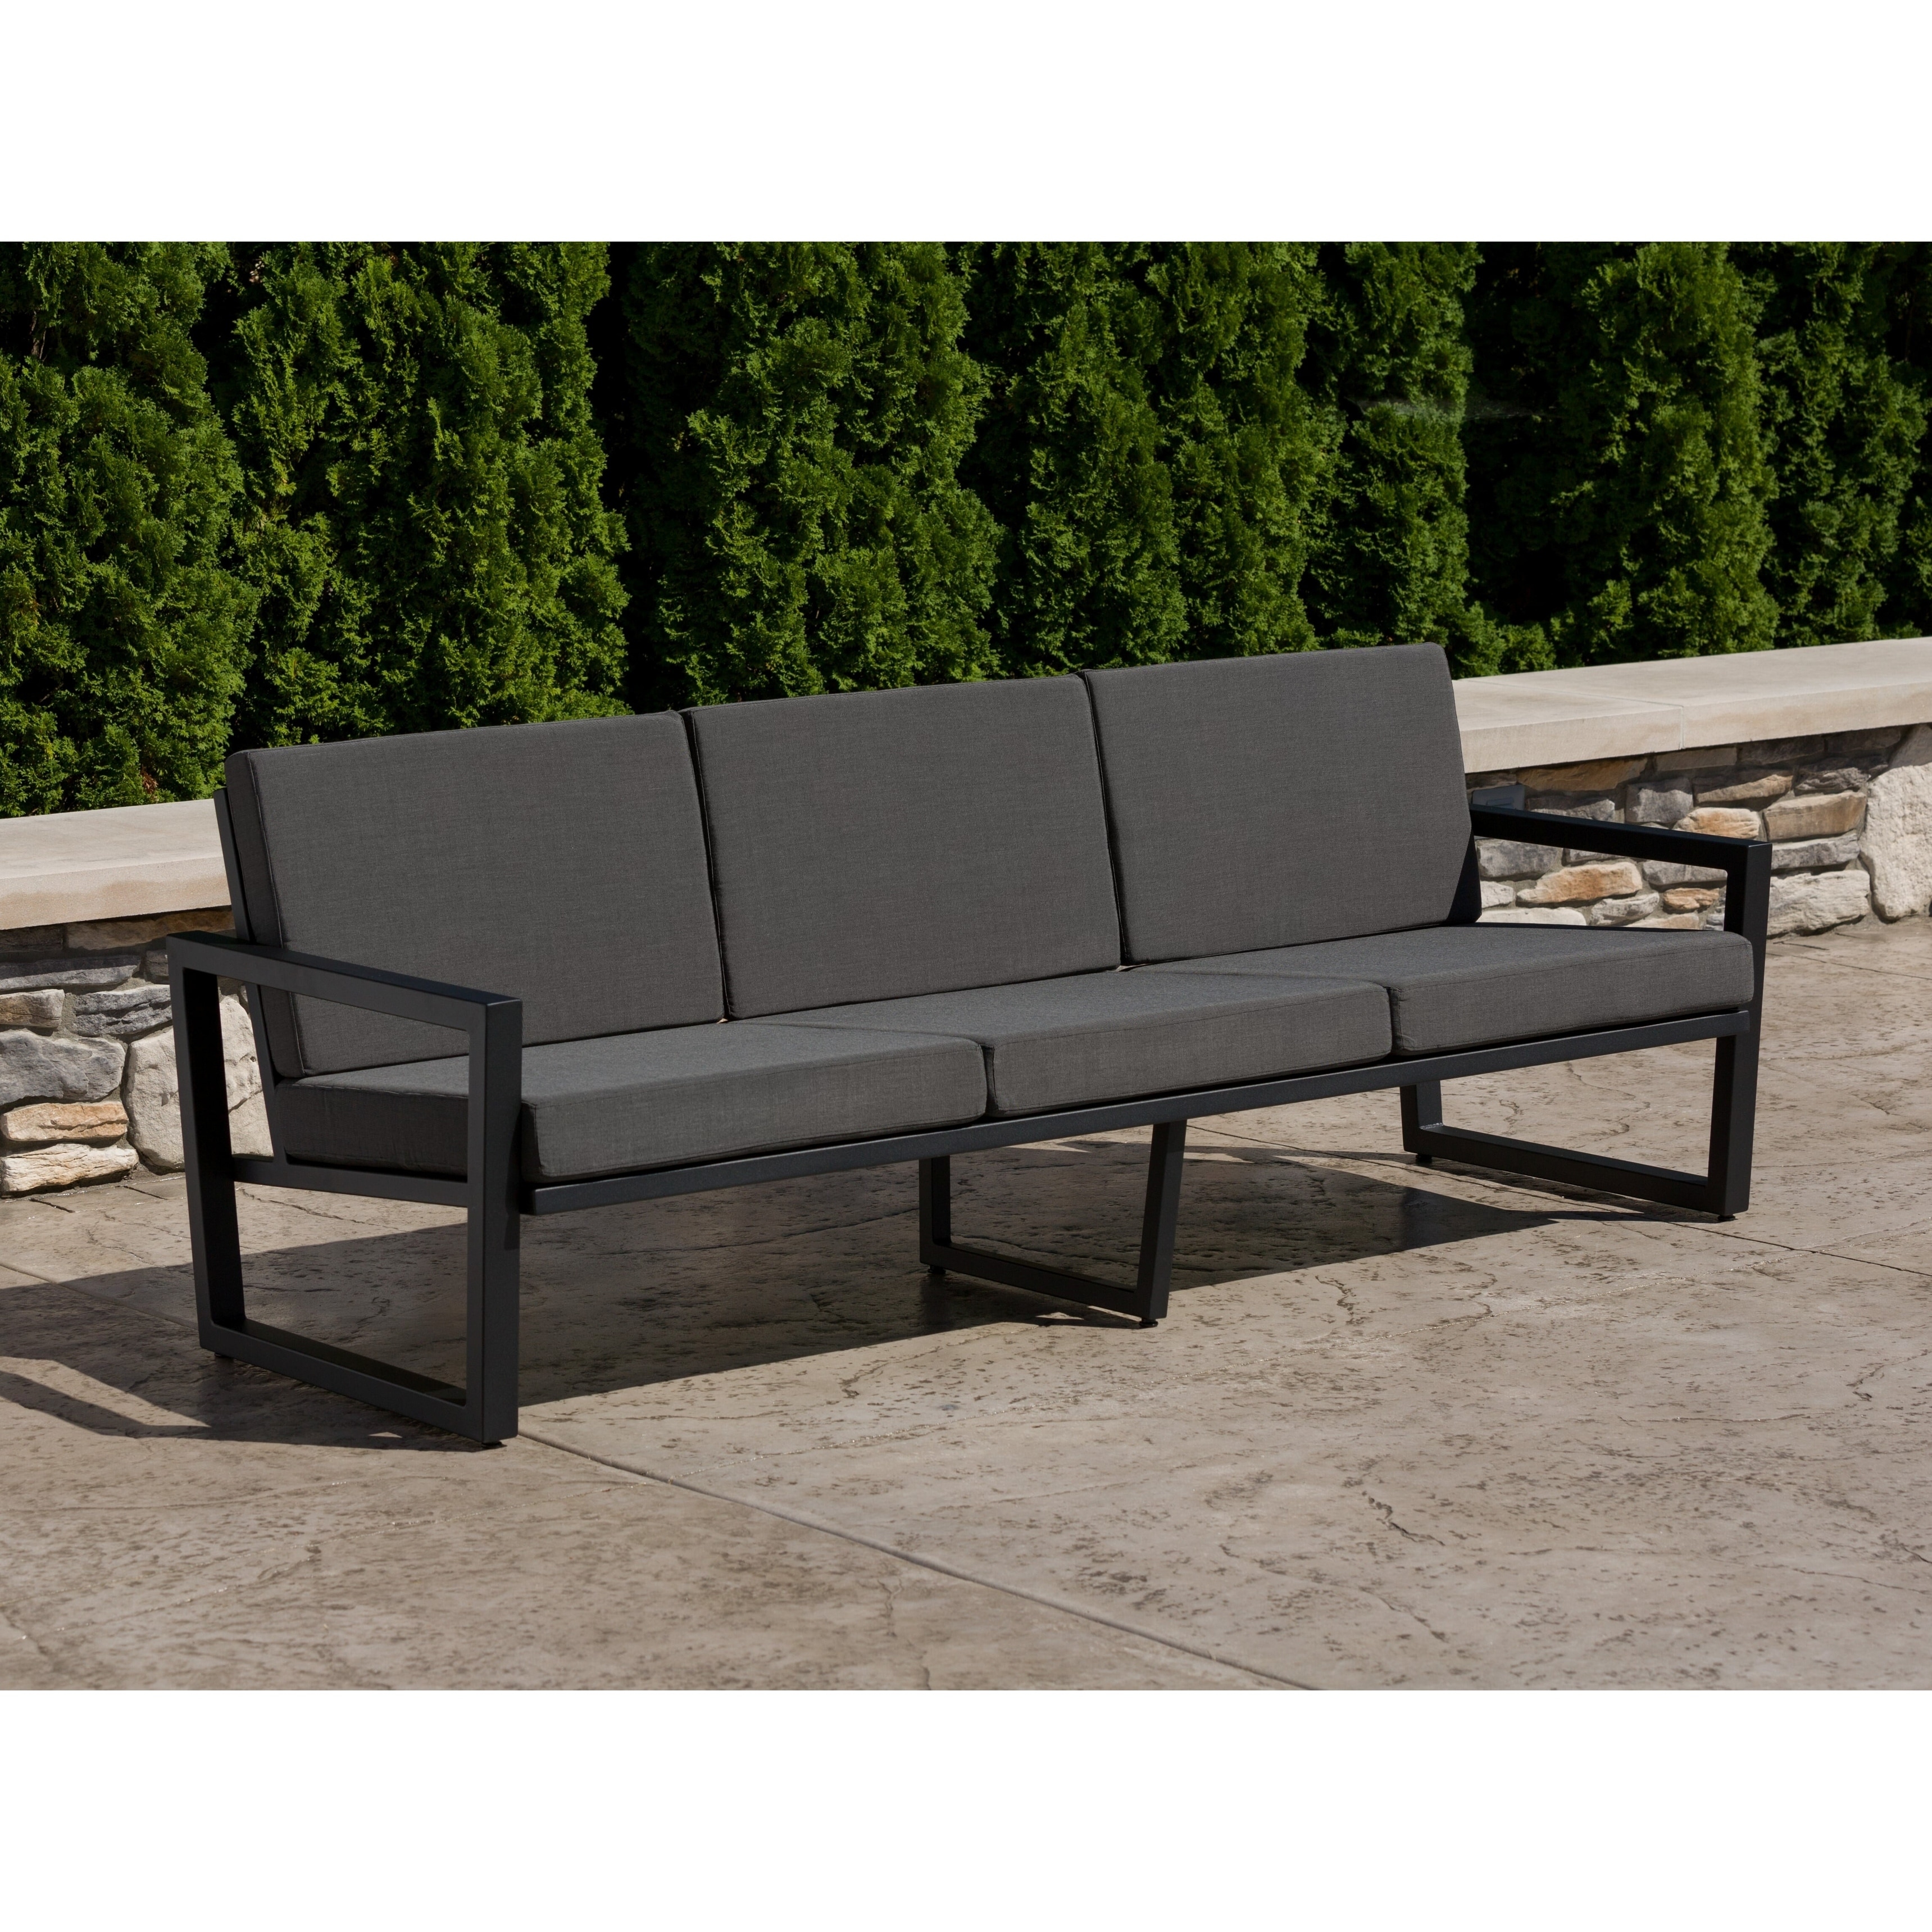 Elan Furniture Vero Outdoor Sofa - Coal Sunbrella Cushions